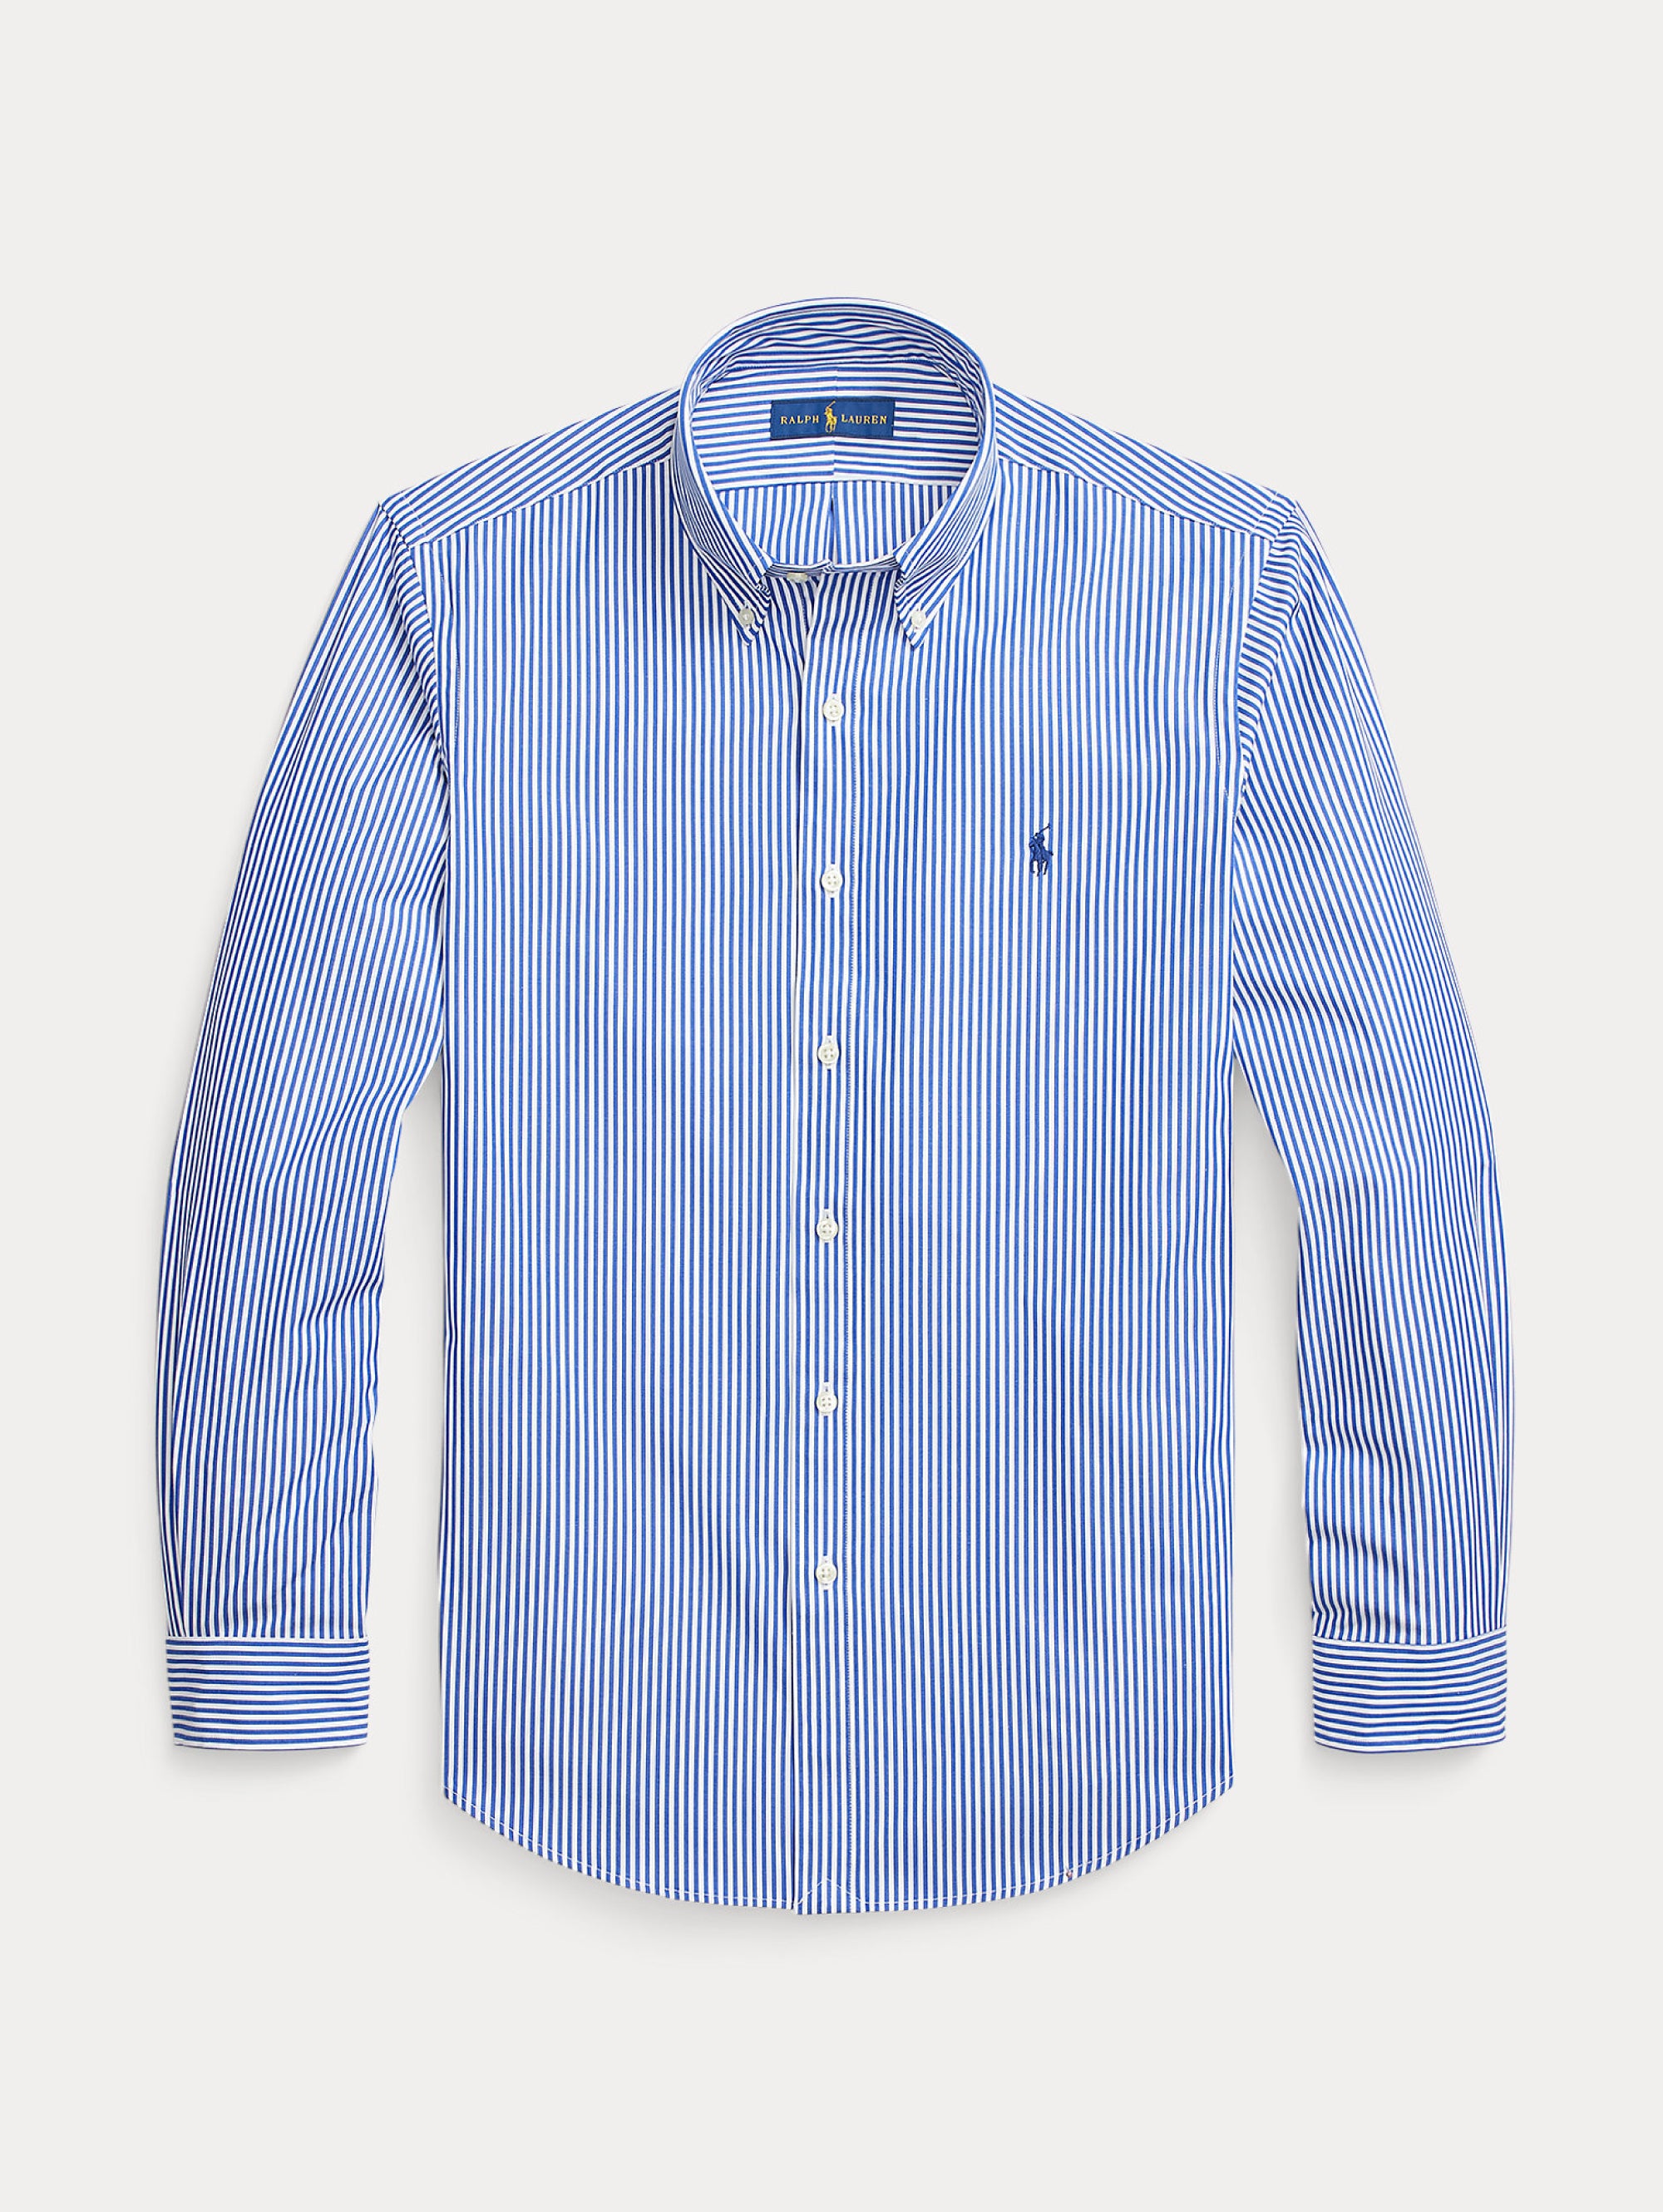 RALPH LAUREN-Camicia a Righe Custom Fit Blu/Bianco-TRYME Shop